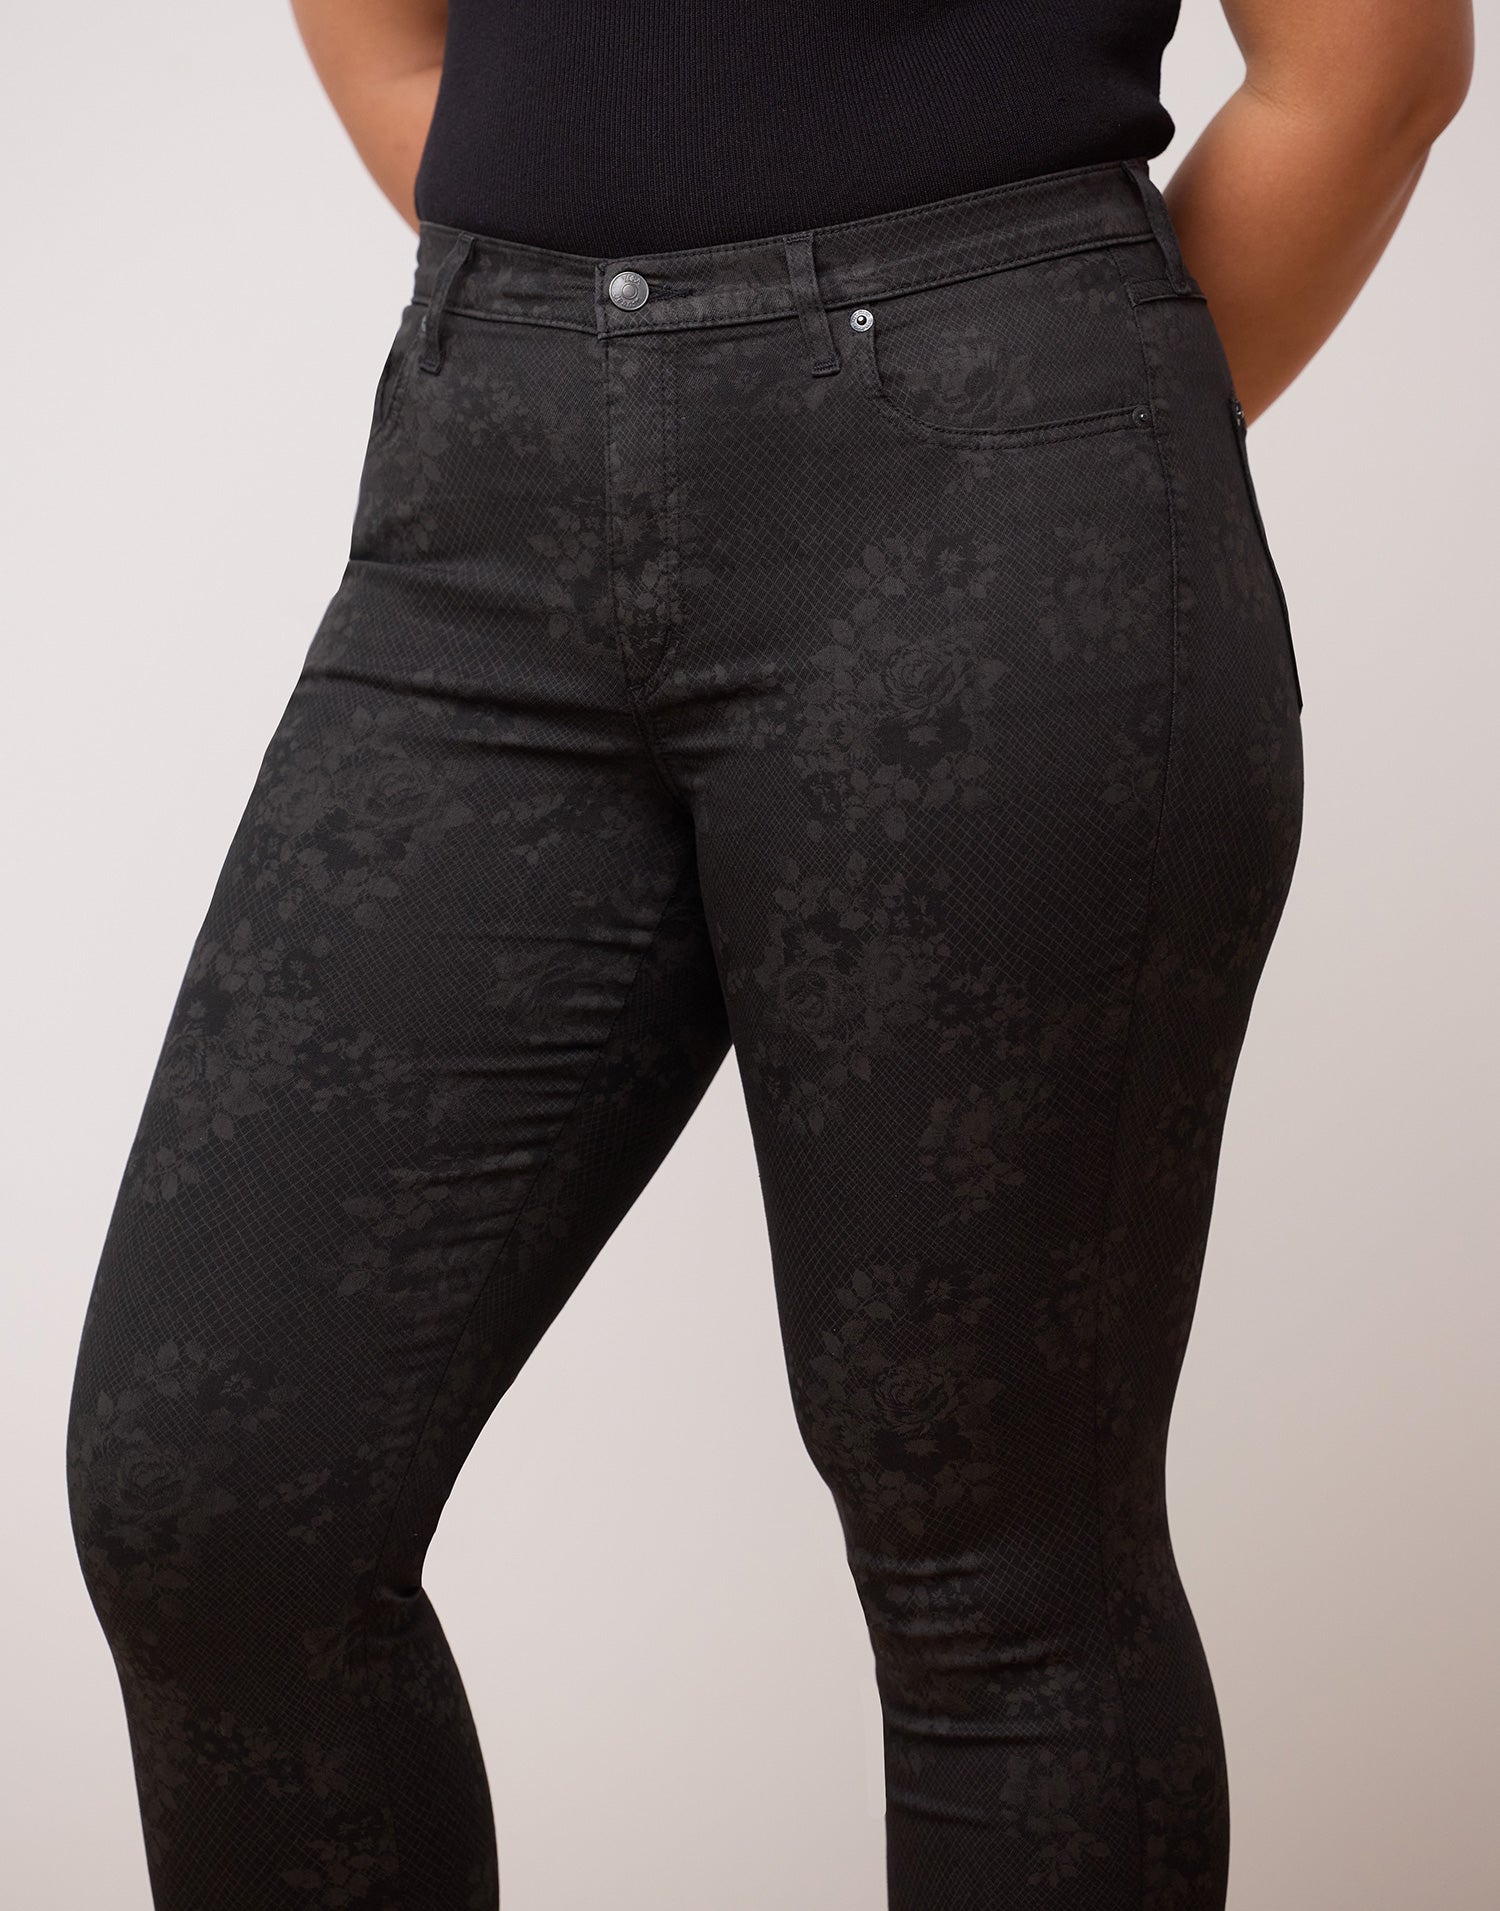 Jeans coupe skinny Rachel floral noir par Yoga Jeans Designé au Québec 2 de 3